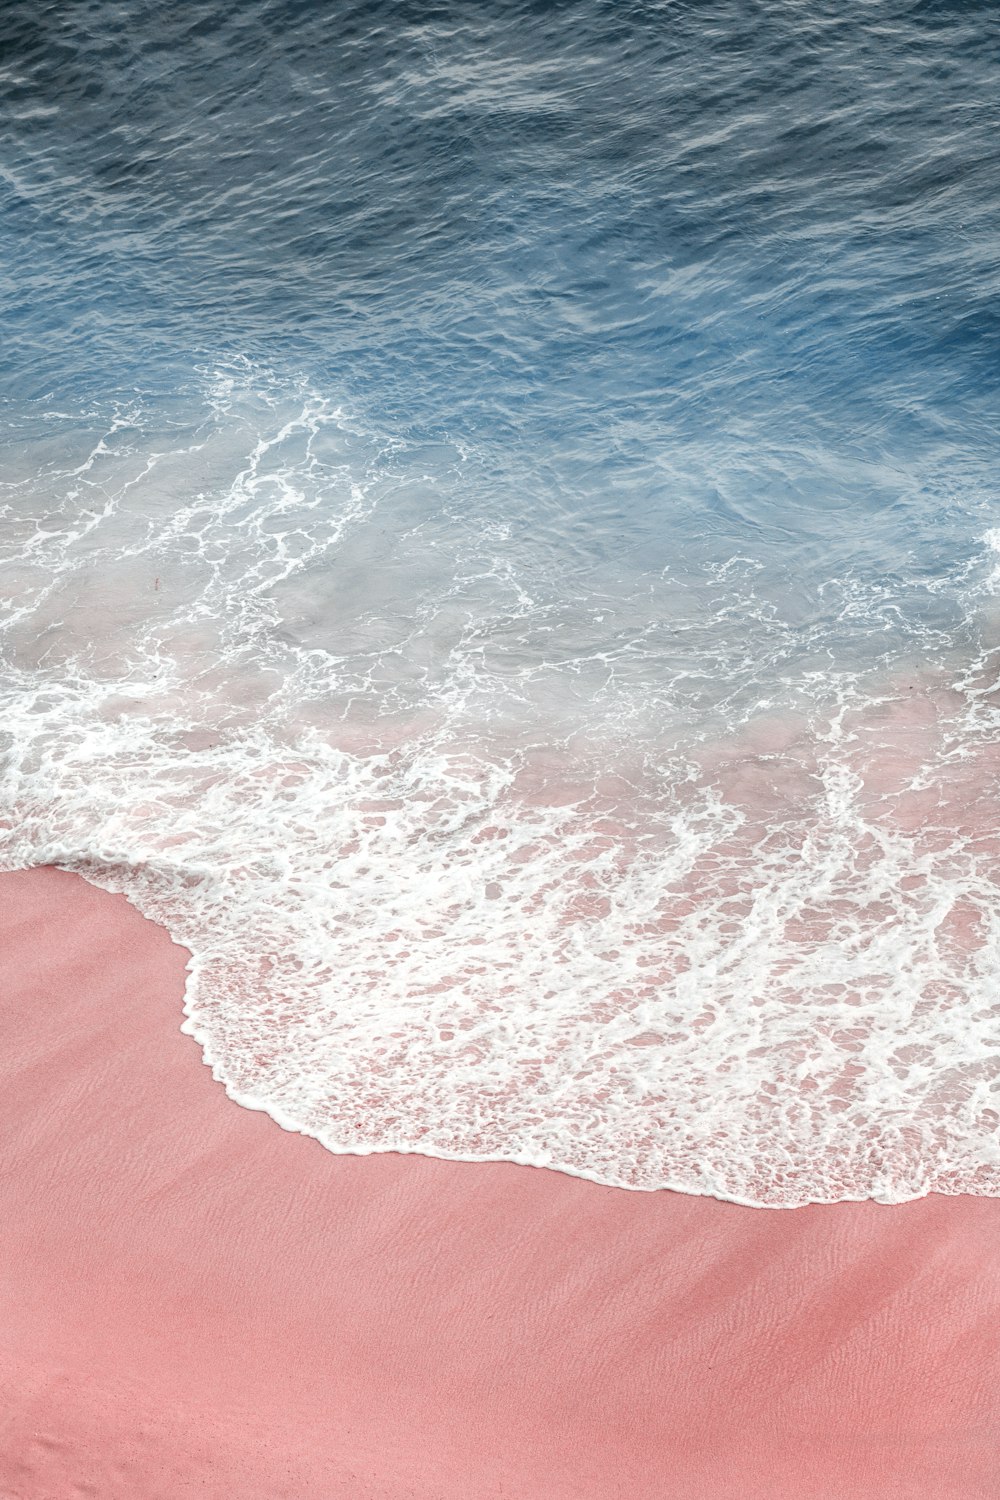 Tận hưởng những hình ảnh đại dương màu hồng lung linh, đầy sức sống và giúp bạn tạm rời xa những bộn bề công việc để thư giãn một cách tuyệt vời.